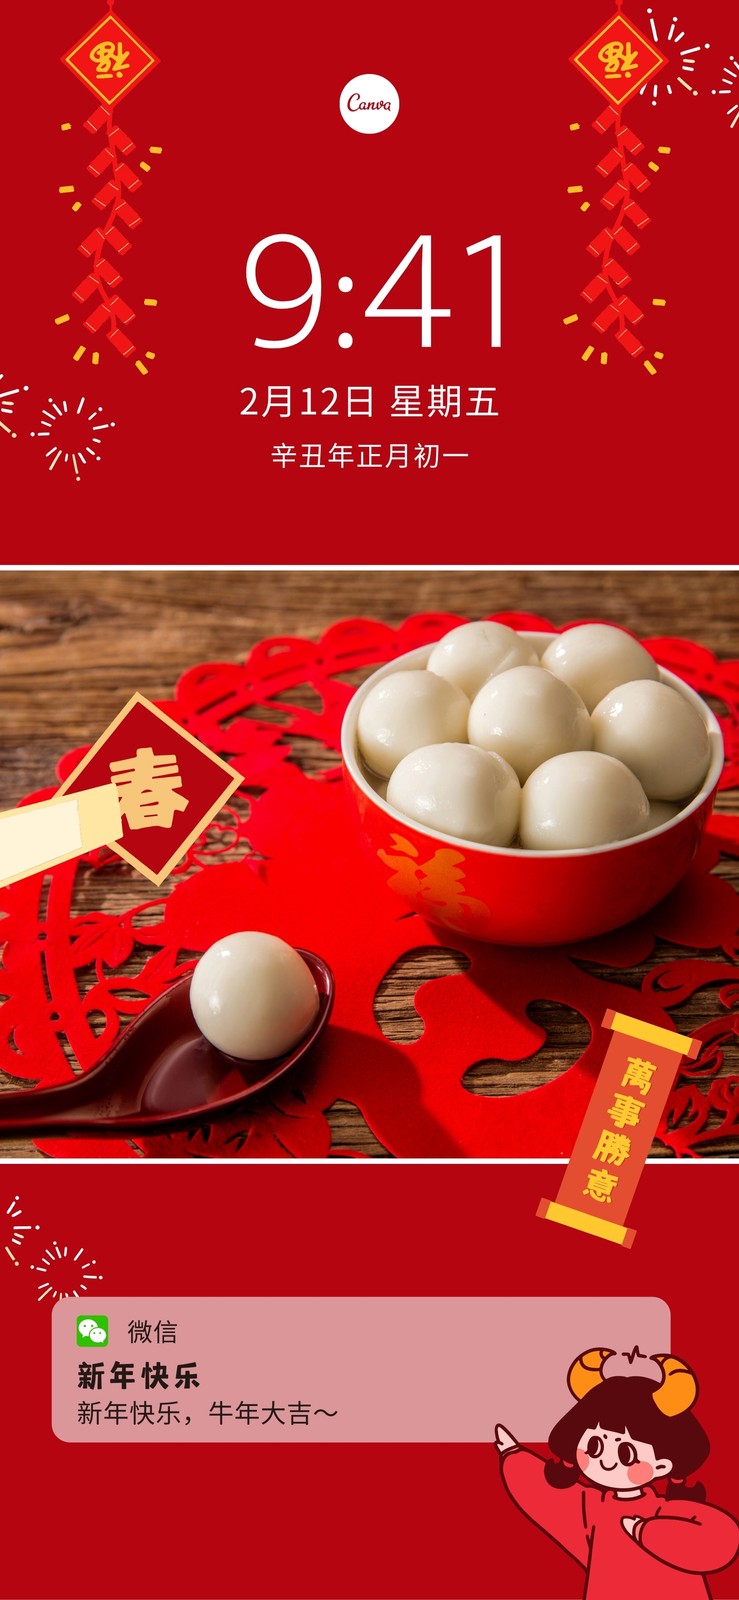 红白色新年风吃汤圆照片照片新年plog分享中文新手机壁纸